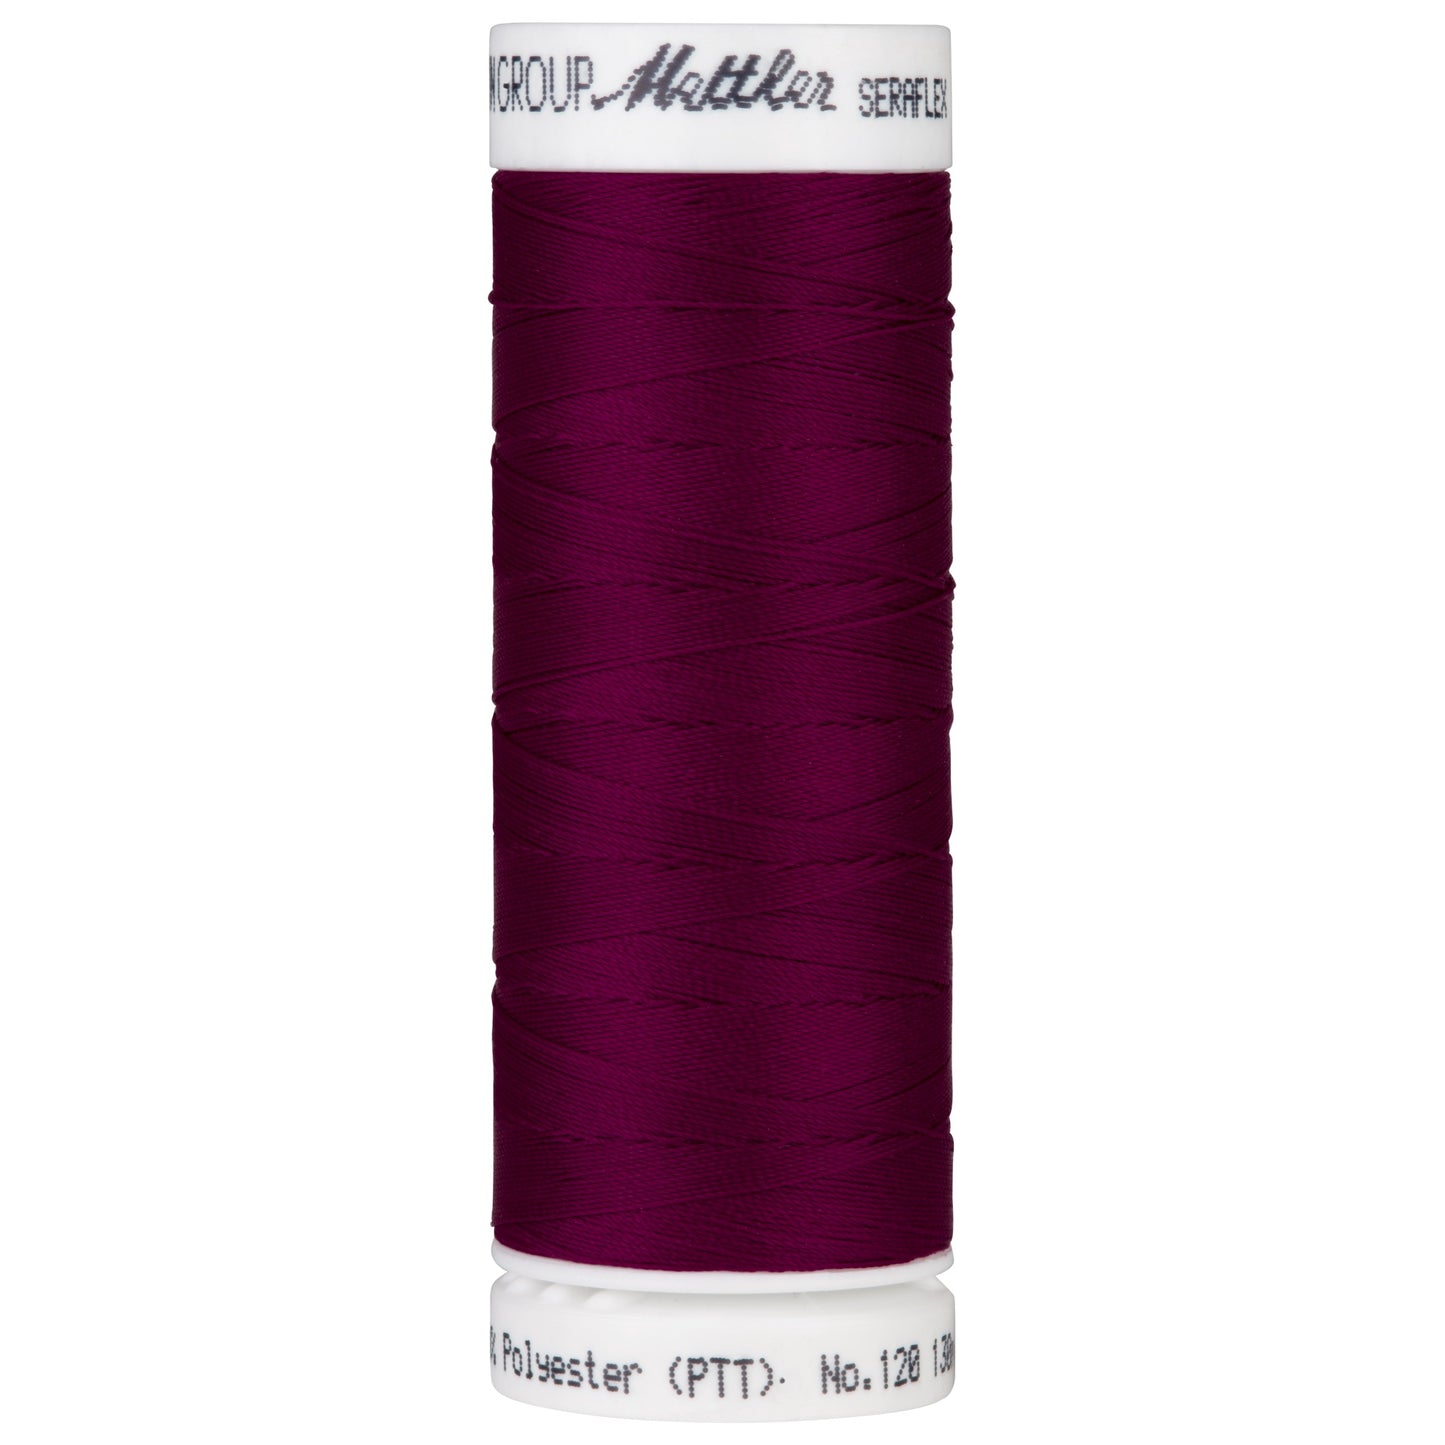 Seraflex - Mettler - Stretch Thread - For Stretchy Seams - 130 Meters - Dark Currant